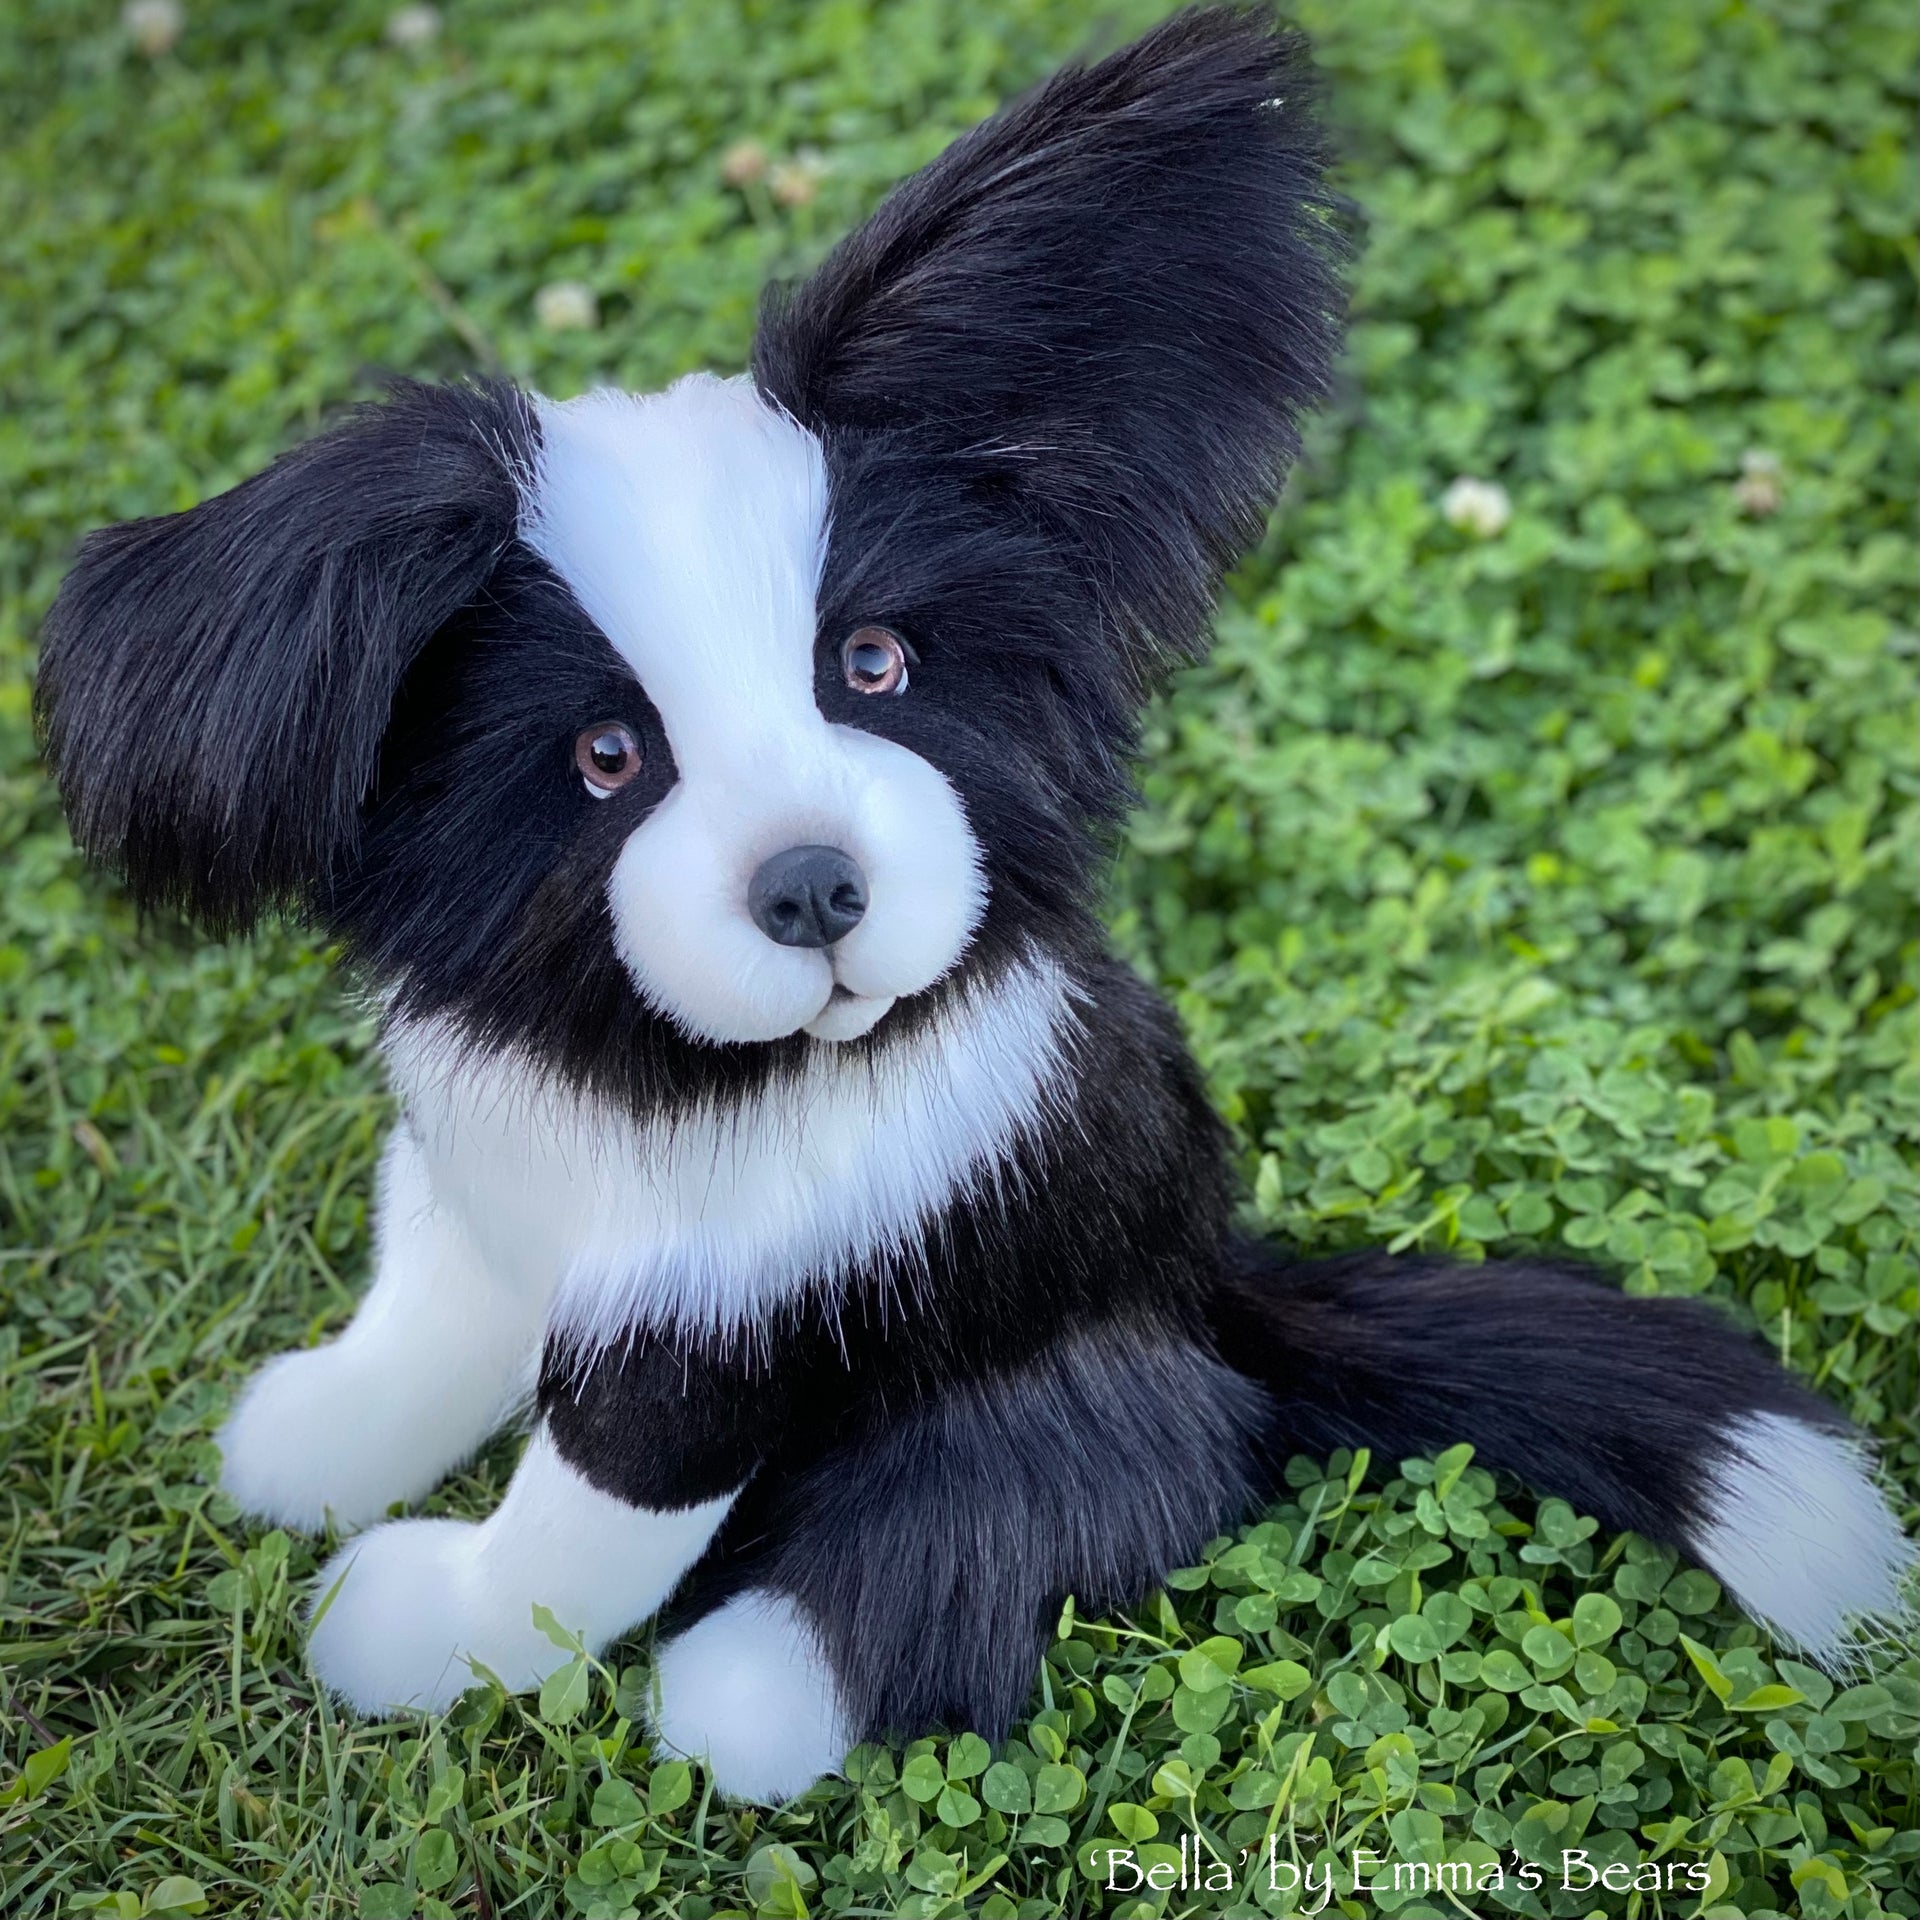 Bella - 17" faux fur artist Border Collie puppy by Emmas Bears - OOAK